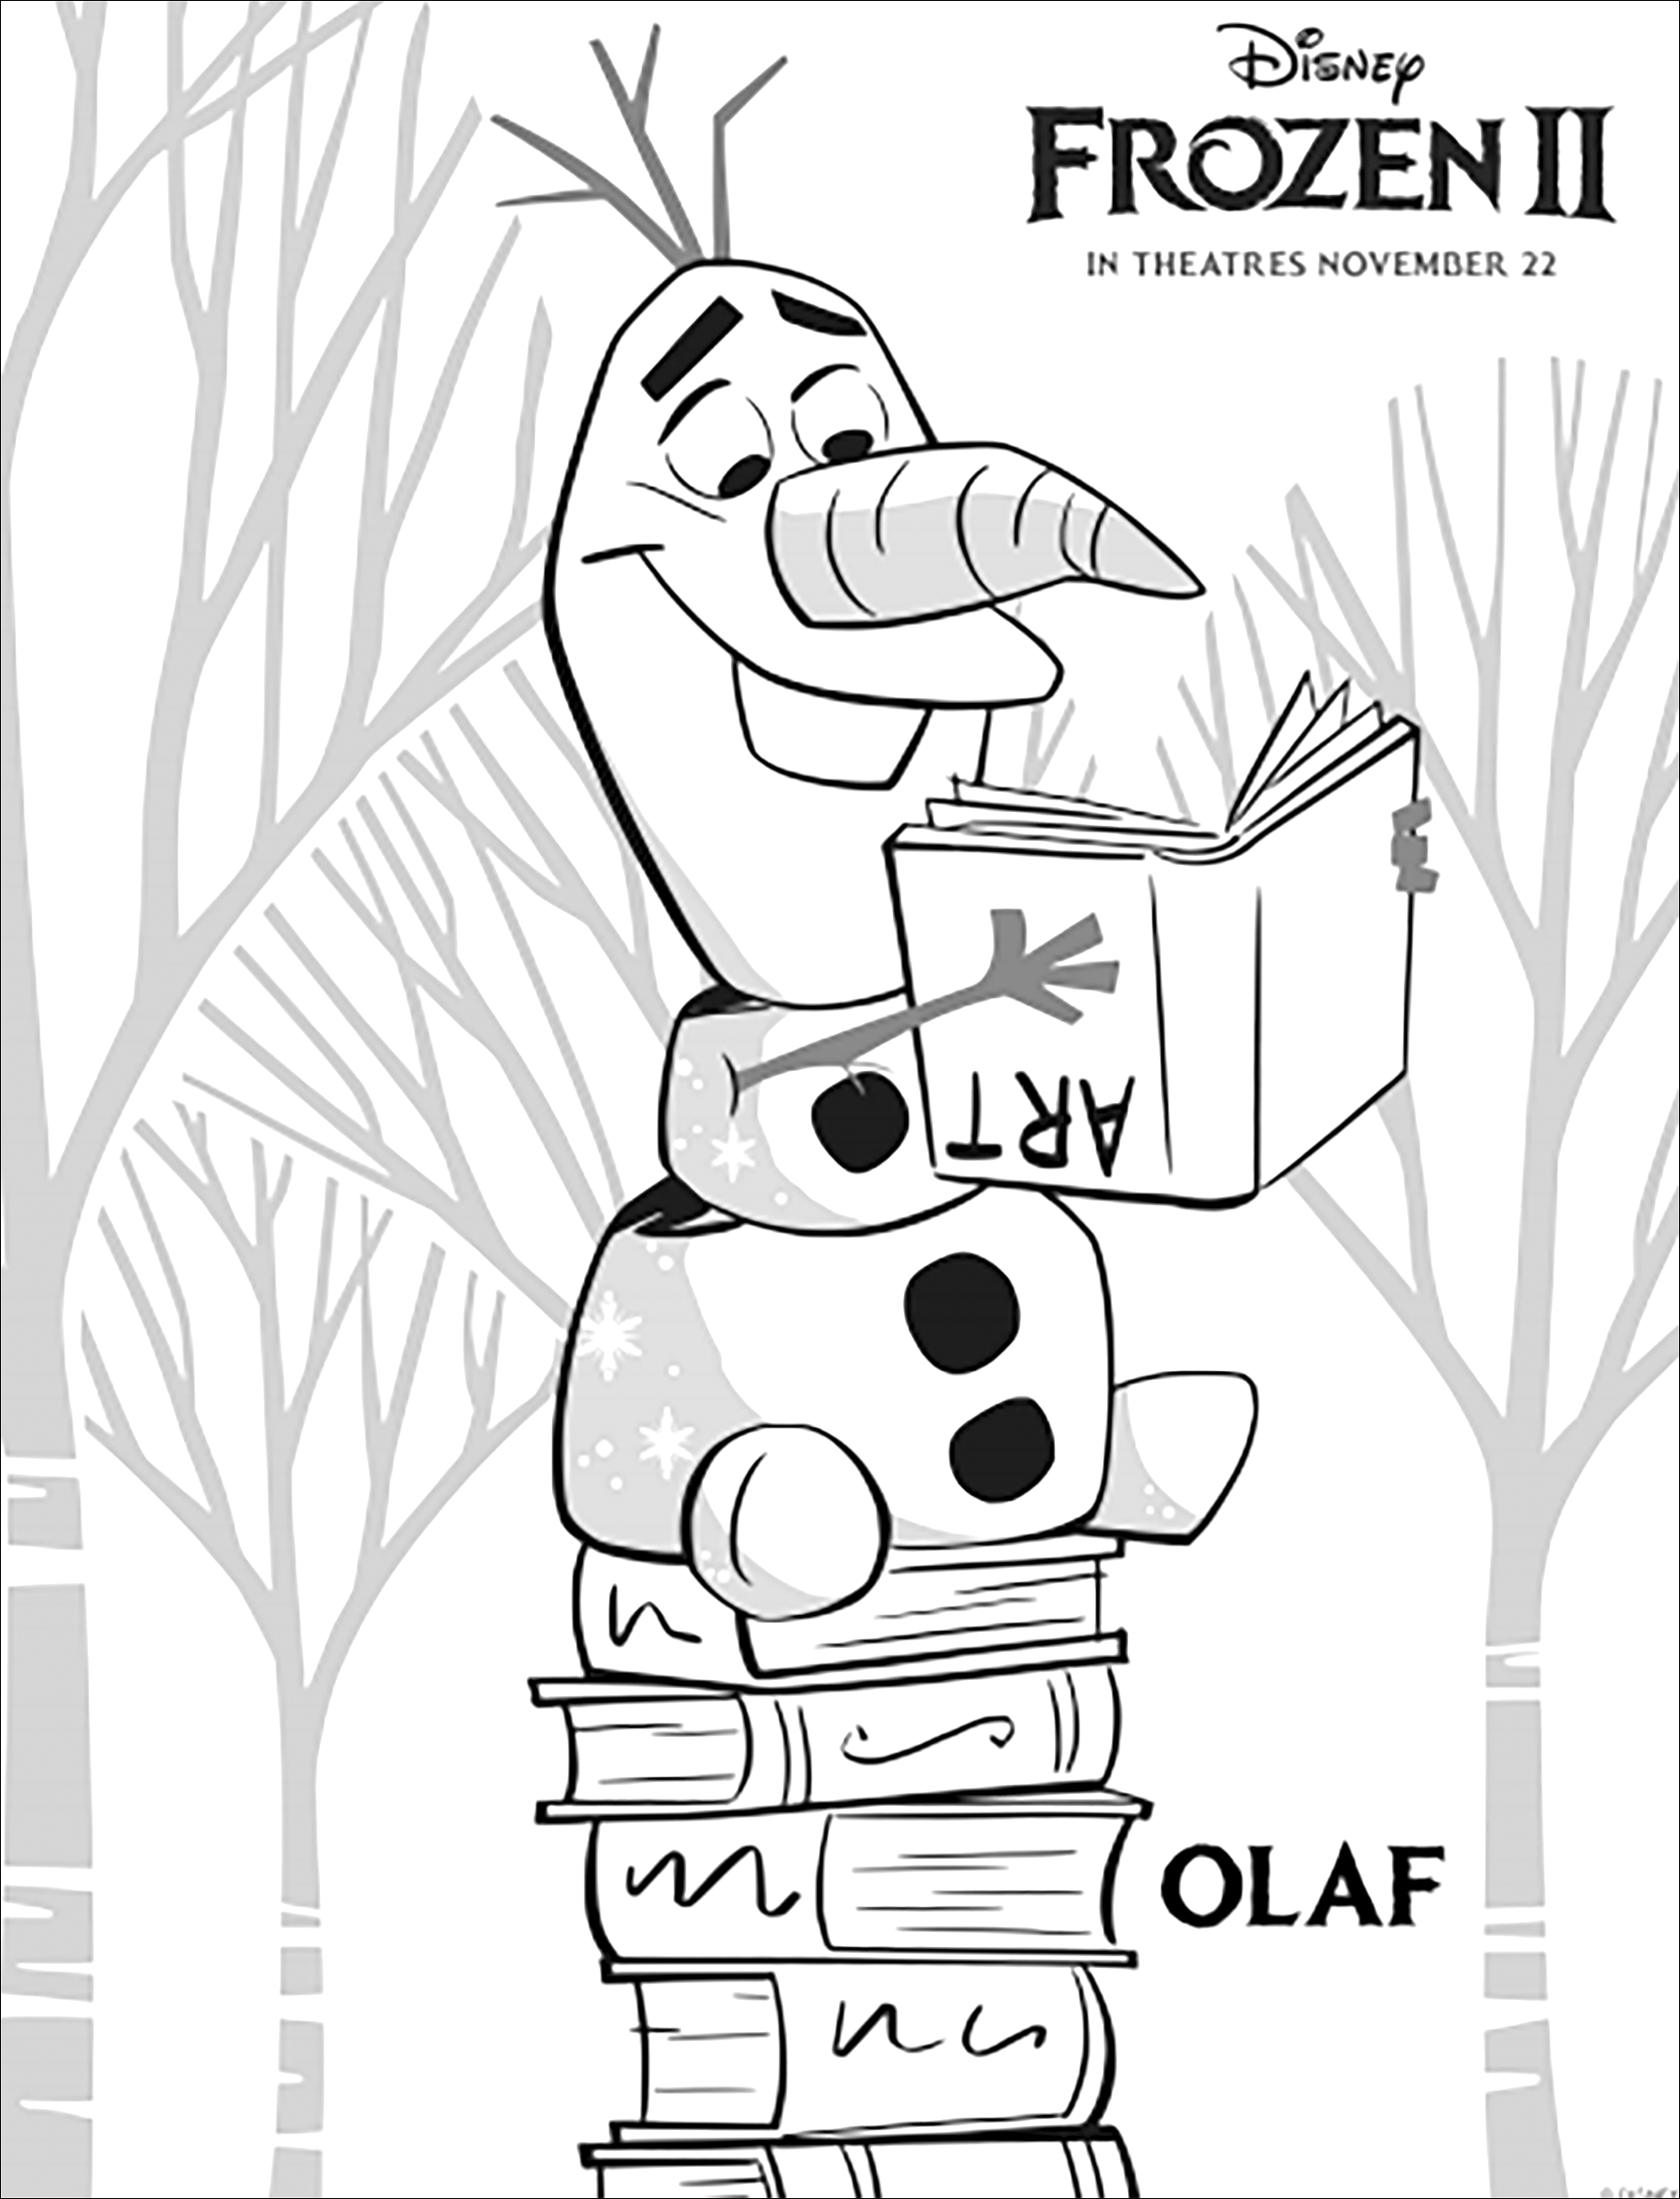 Olaf de retour dans La reine des neiges 2 de Disney (version avec texte)